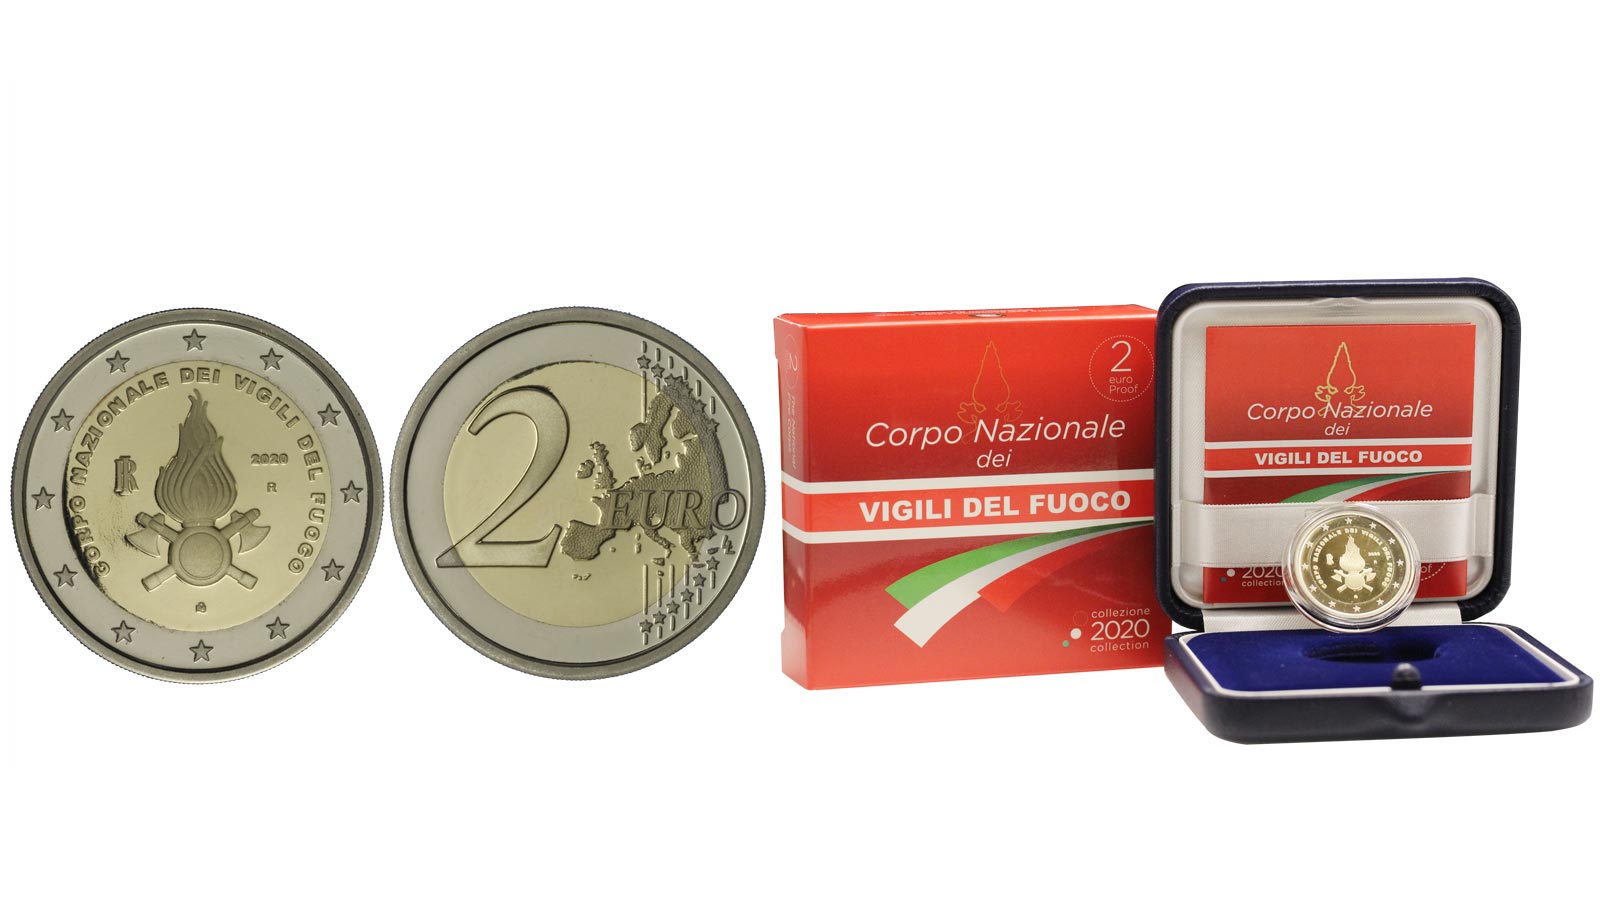 "Corpo Nazionale dei Vigili del Fuoco" - moneta da 2 euro in confezione ufficiale